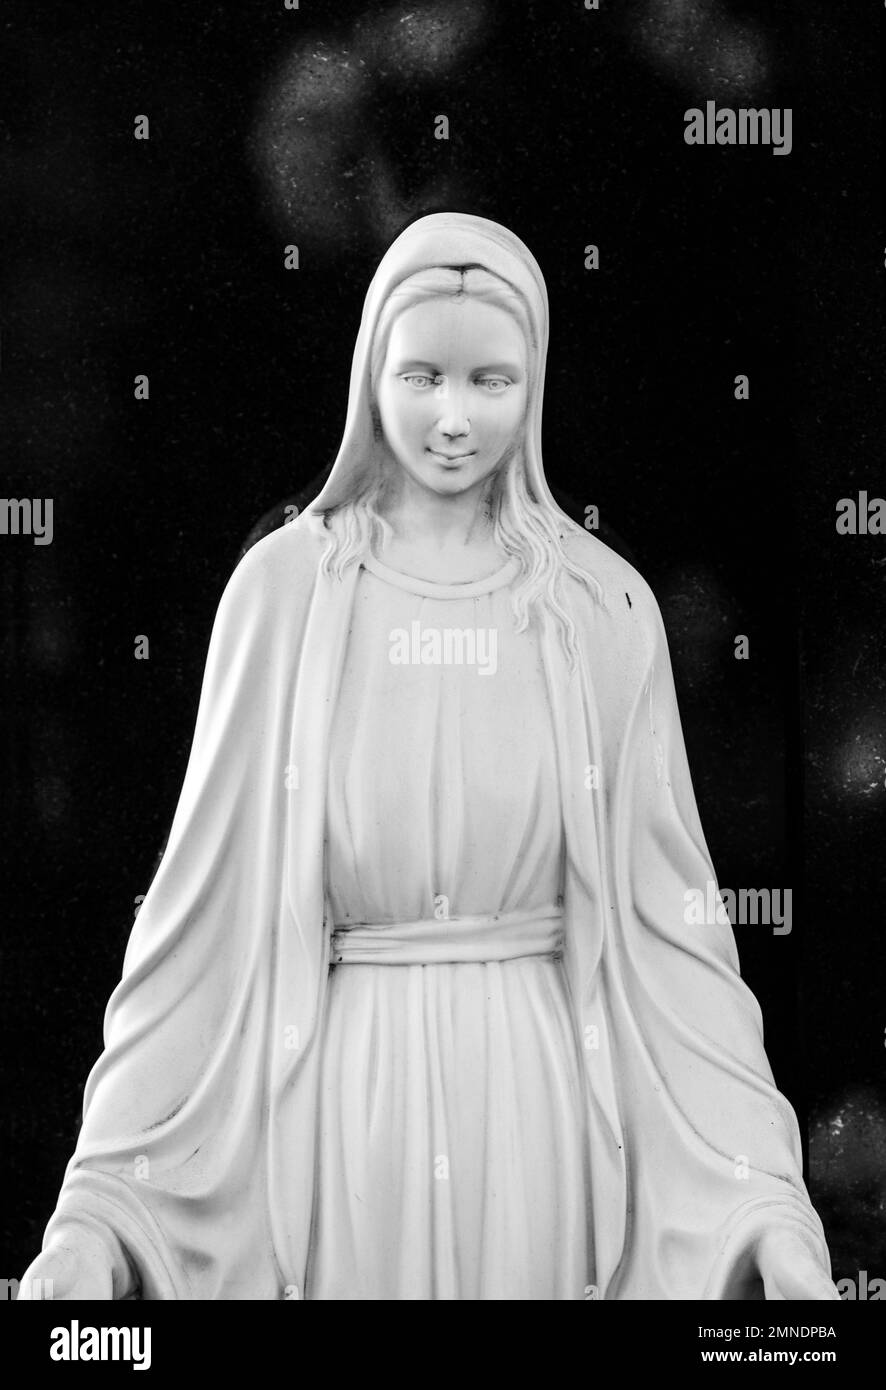 Estatua de mármol blanco de la bendita María madre de dios, imagen en blanco y negro Foto de stock